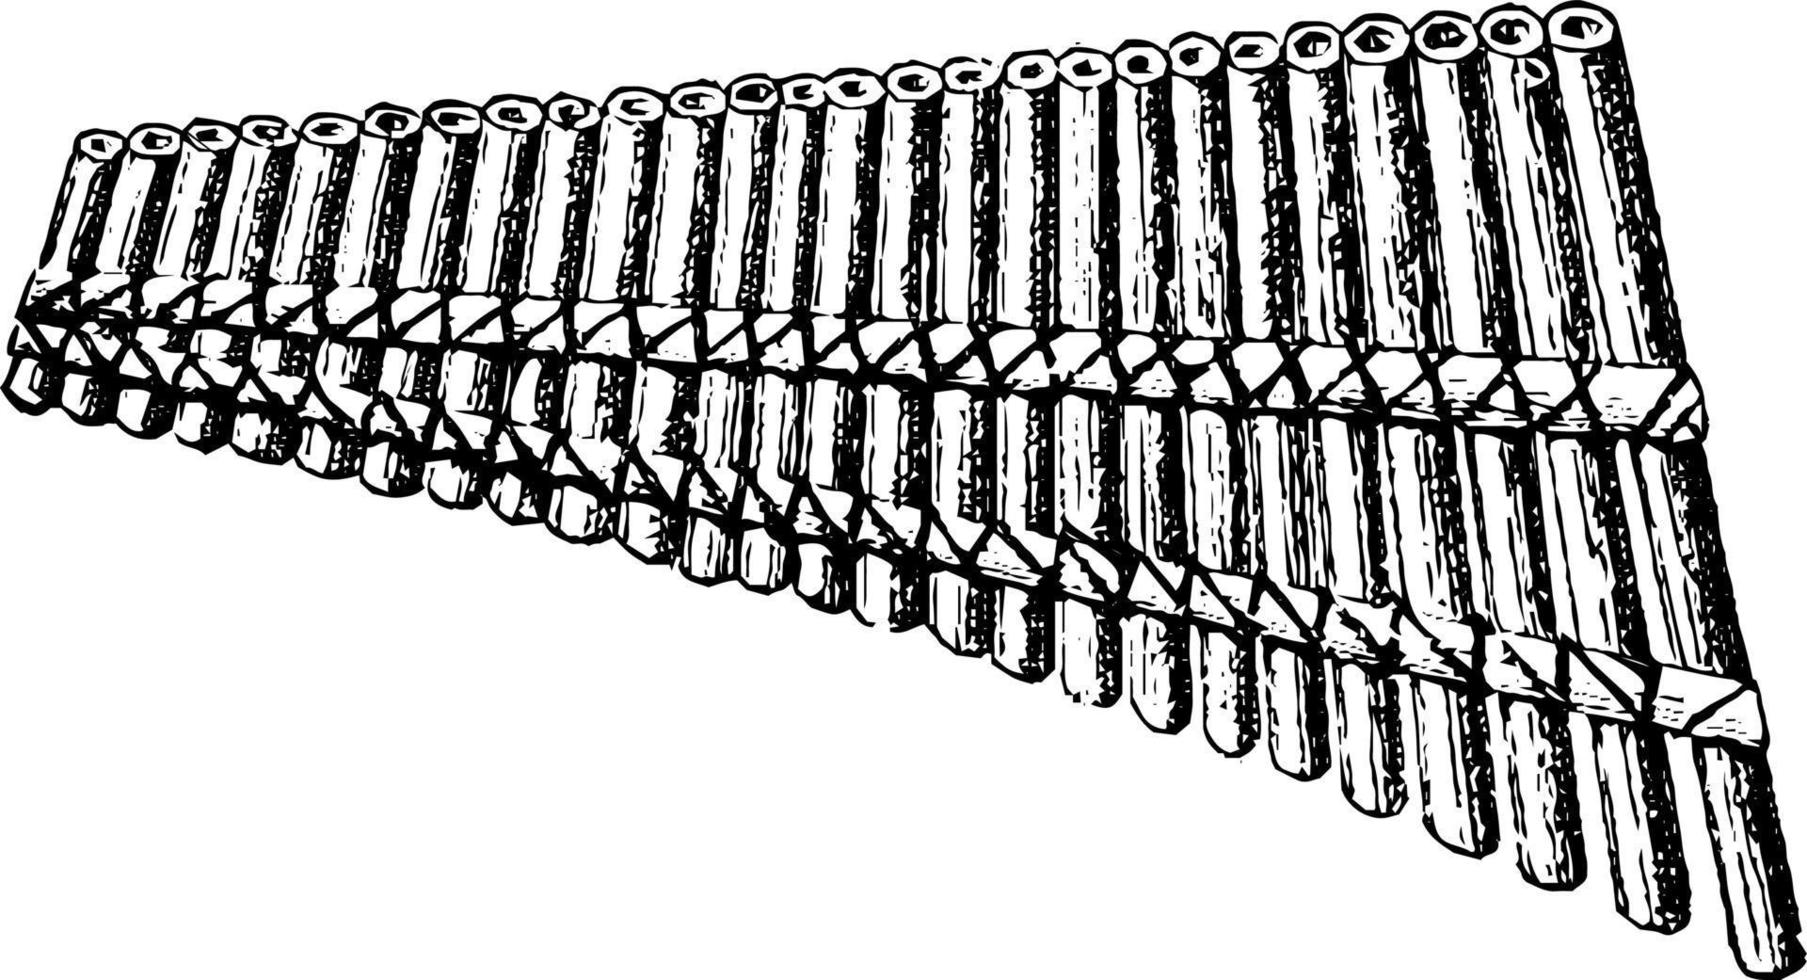 flûtes de pan syrinex, illustration vintage vecteur